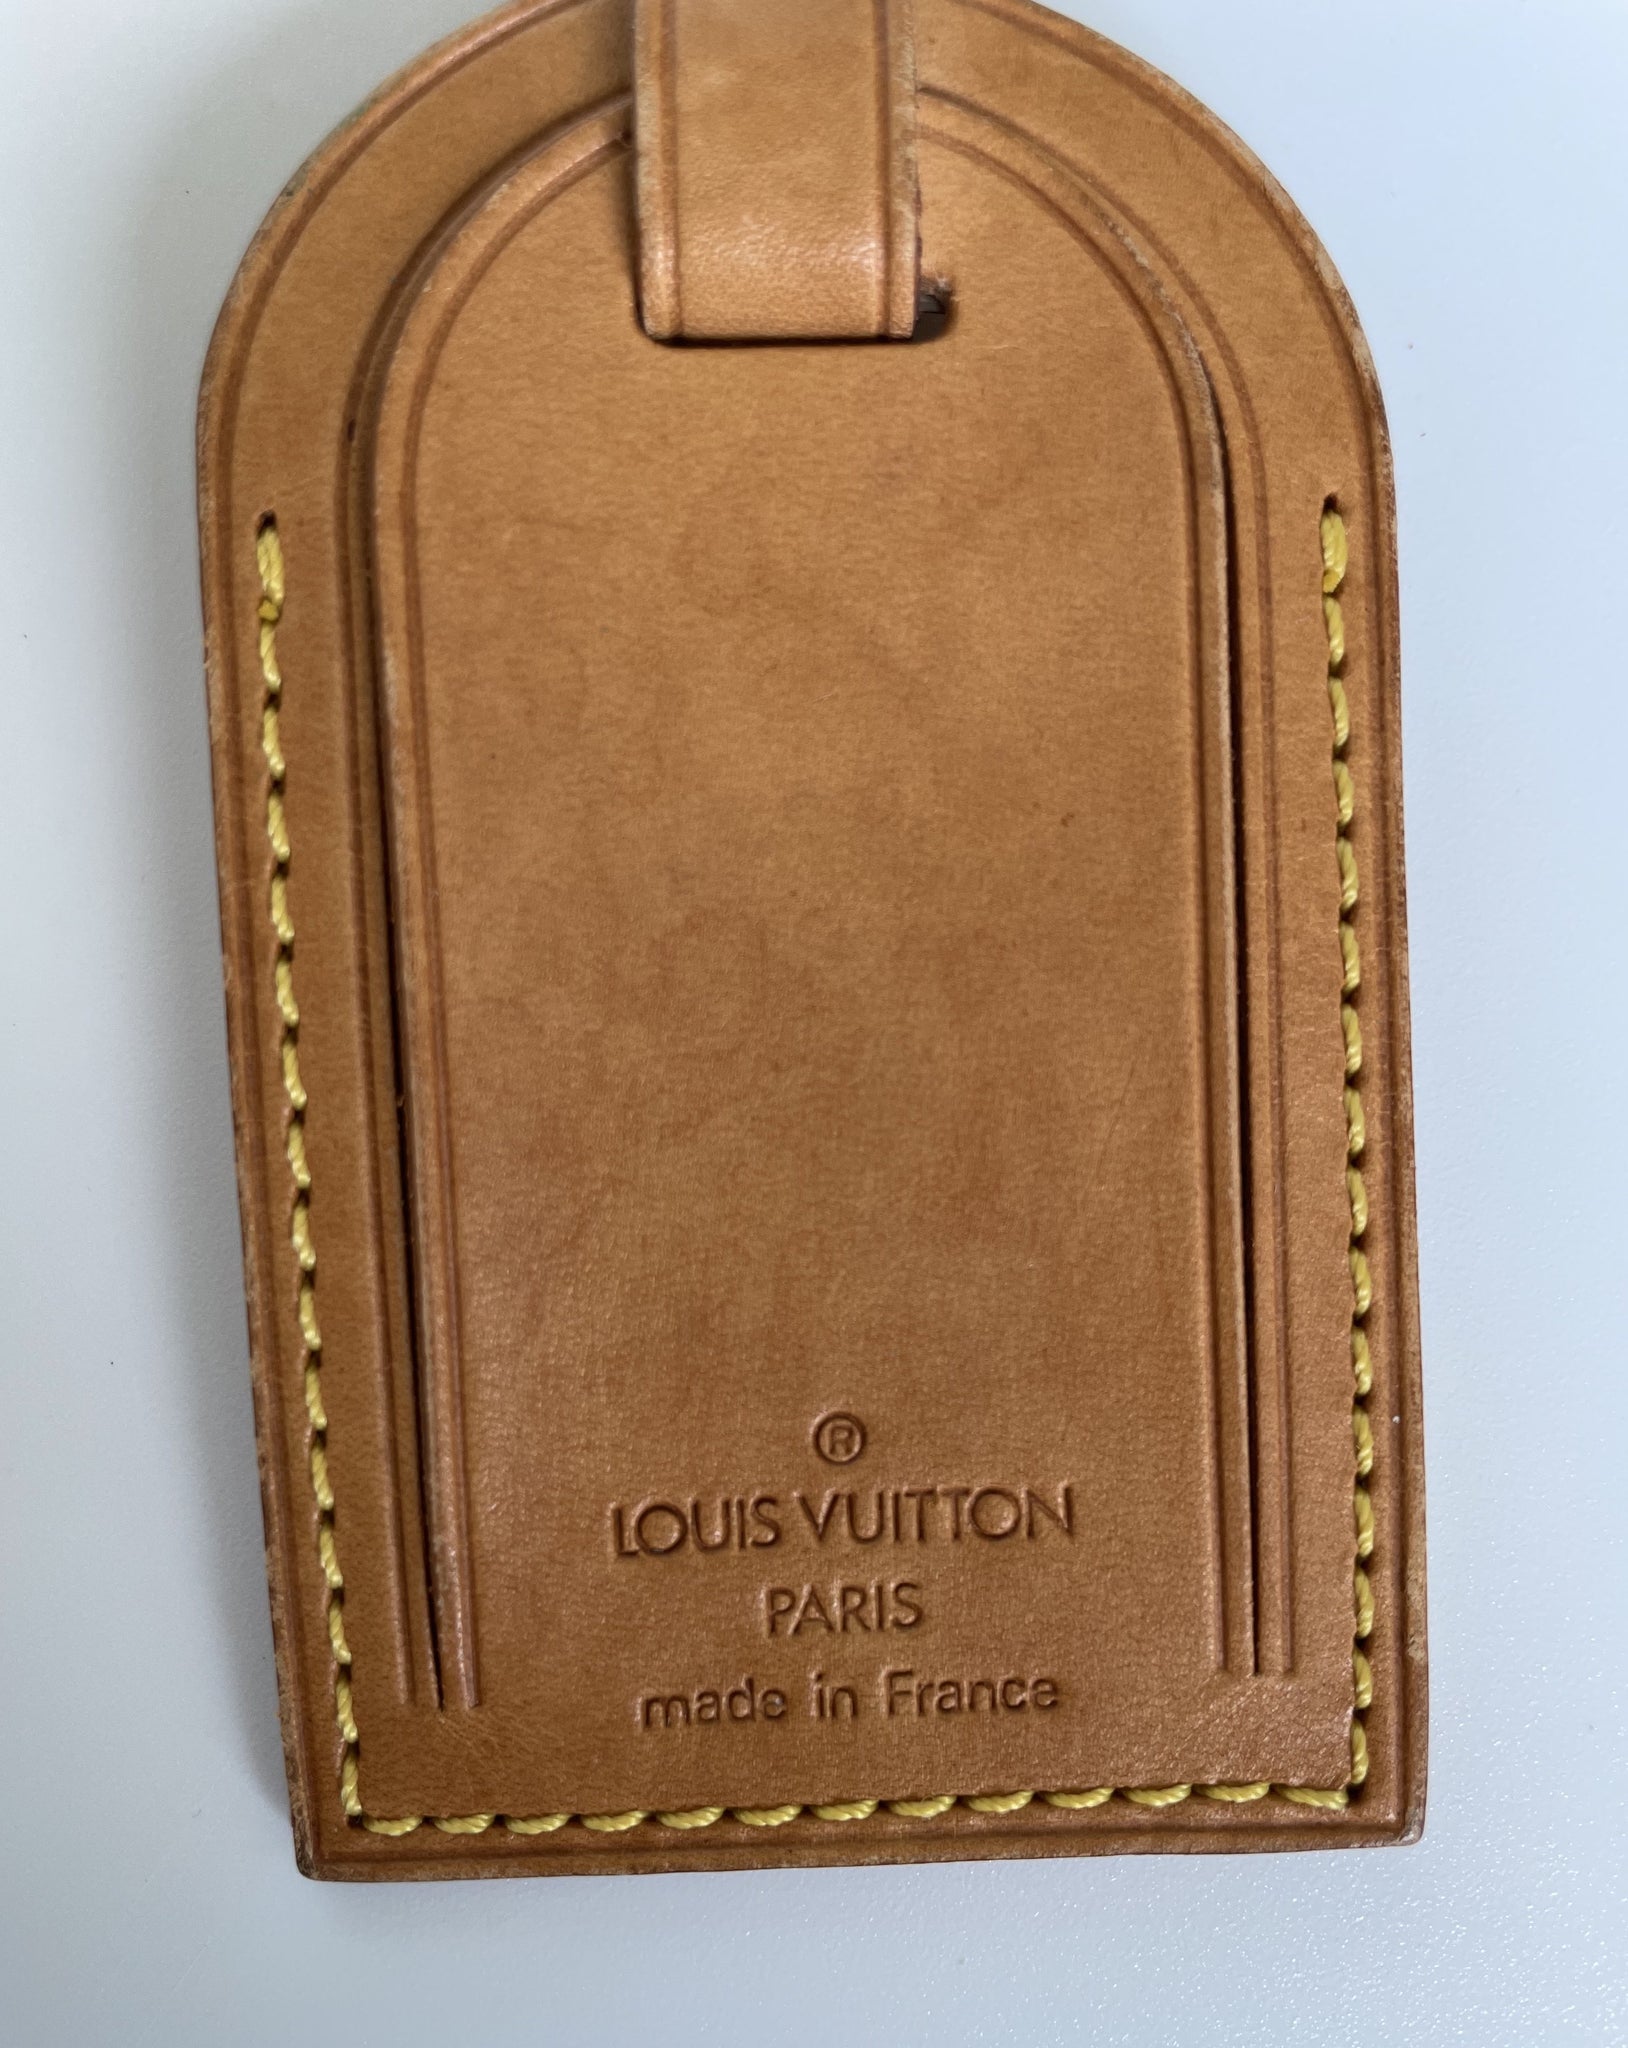 Louis Vuitton Vachetta Leather Luggage Name Tag Louis Vuitton